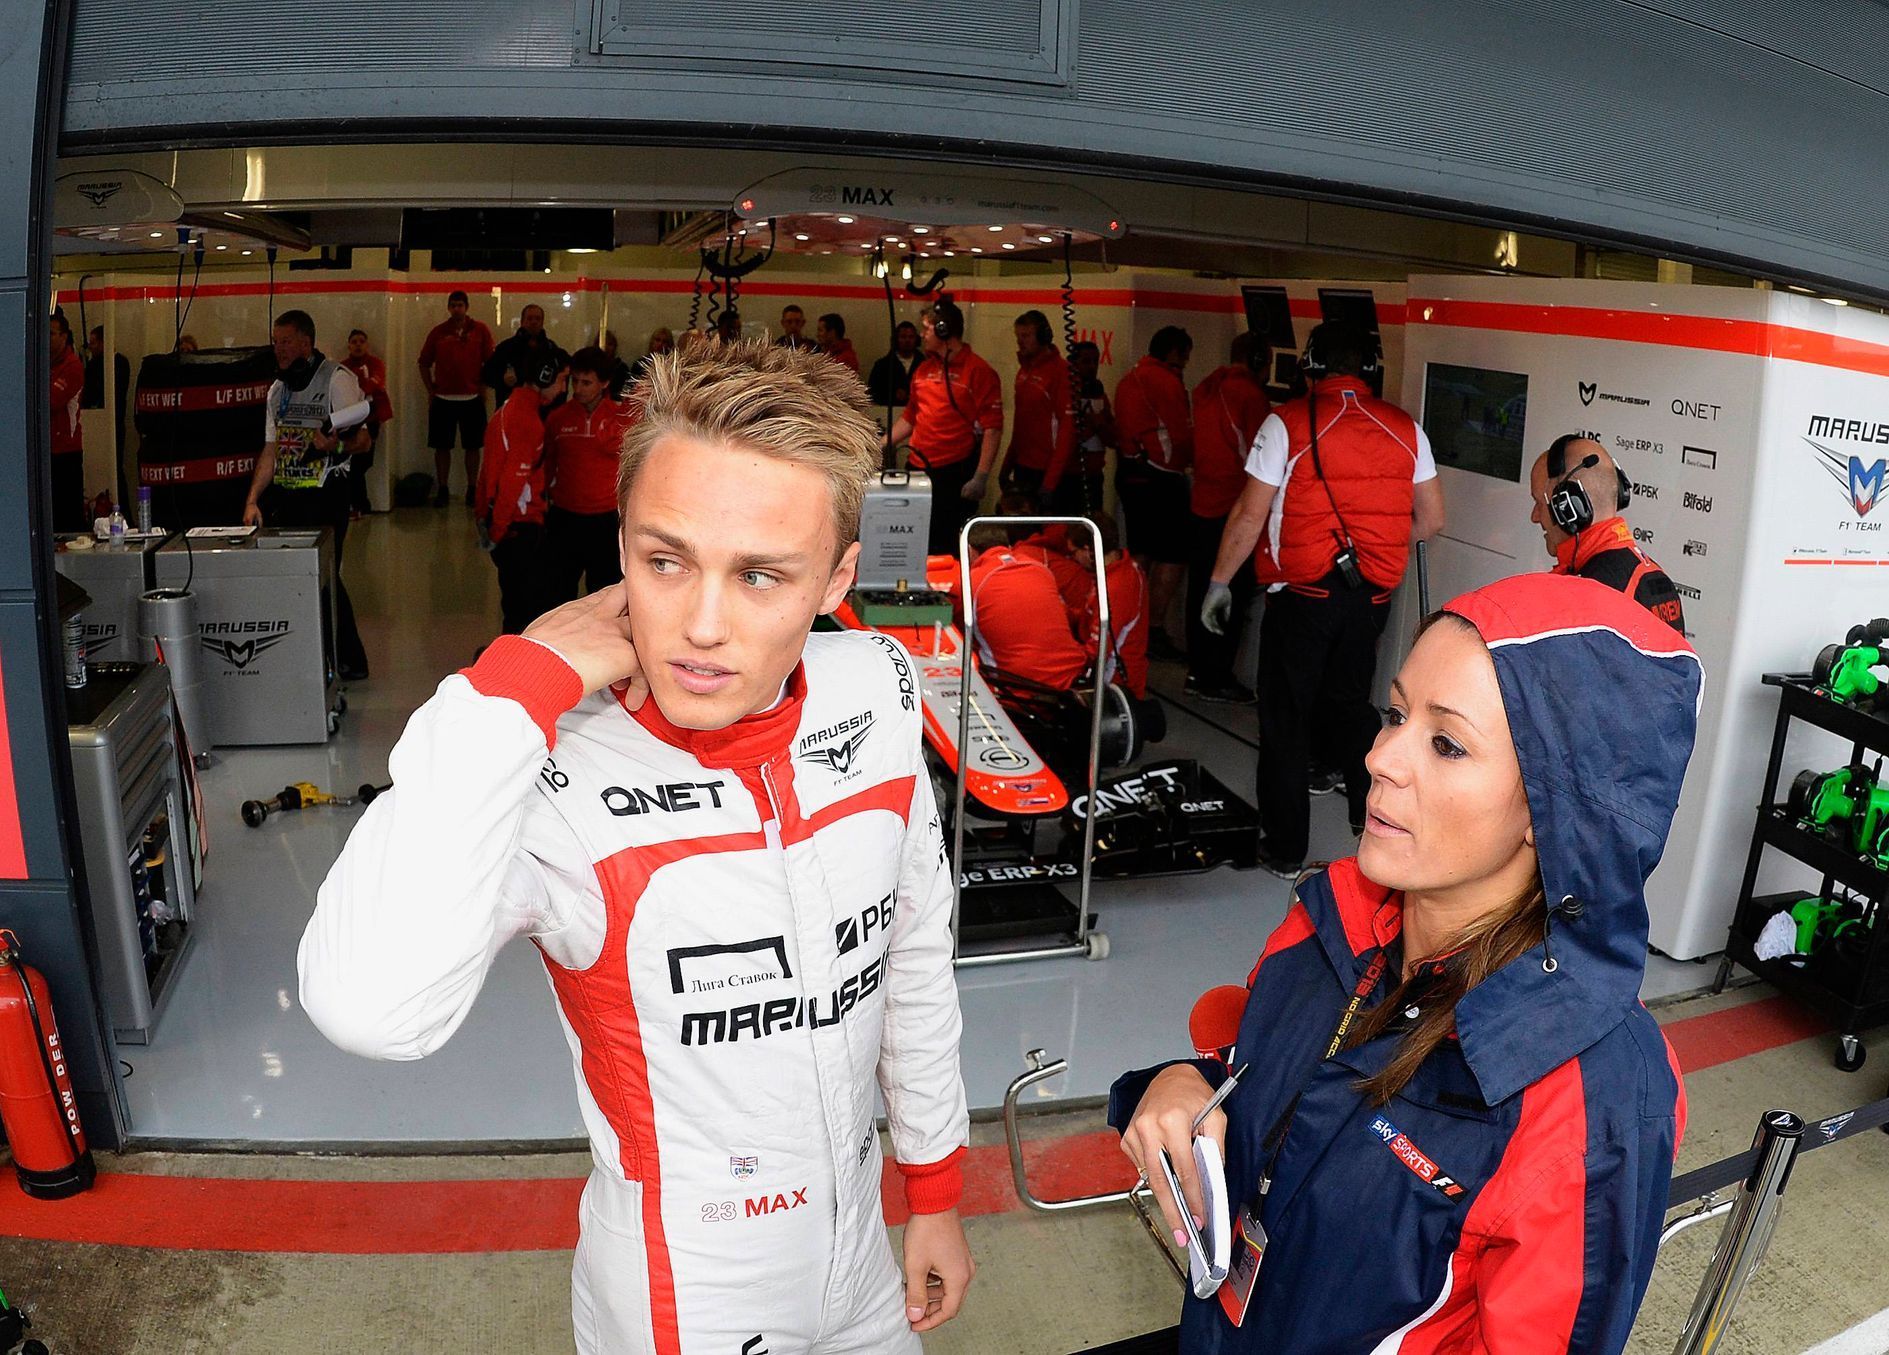 Marussia Formula One driver Max Chilton of Britain watches f